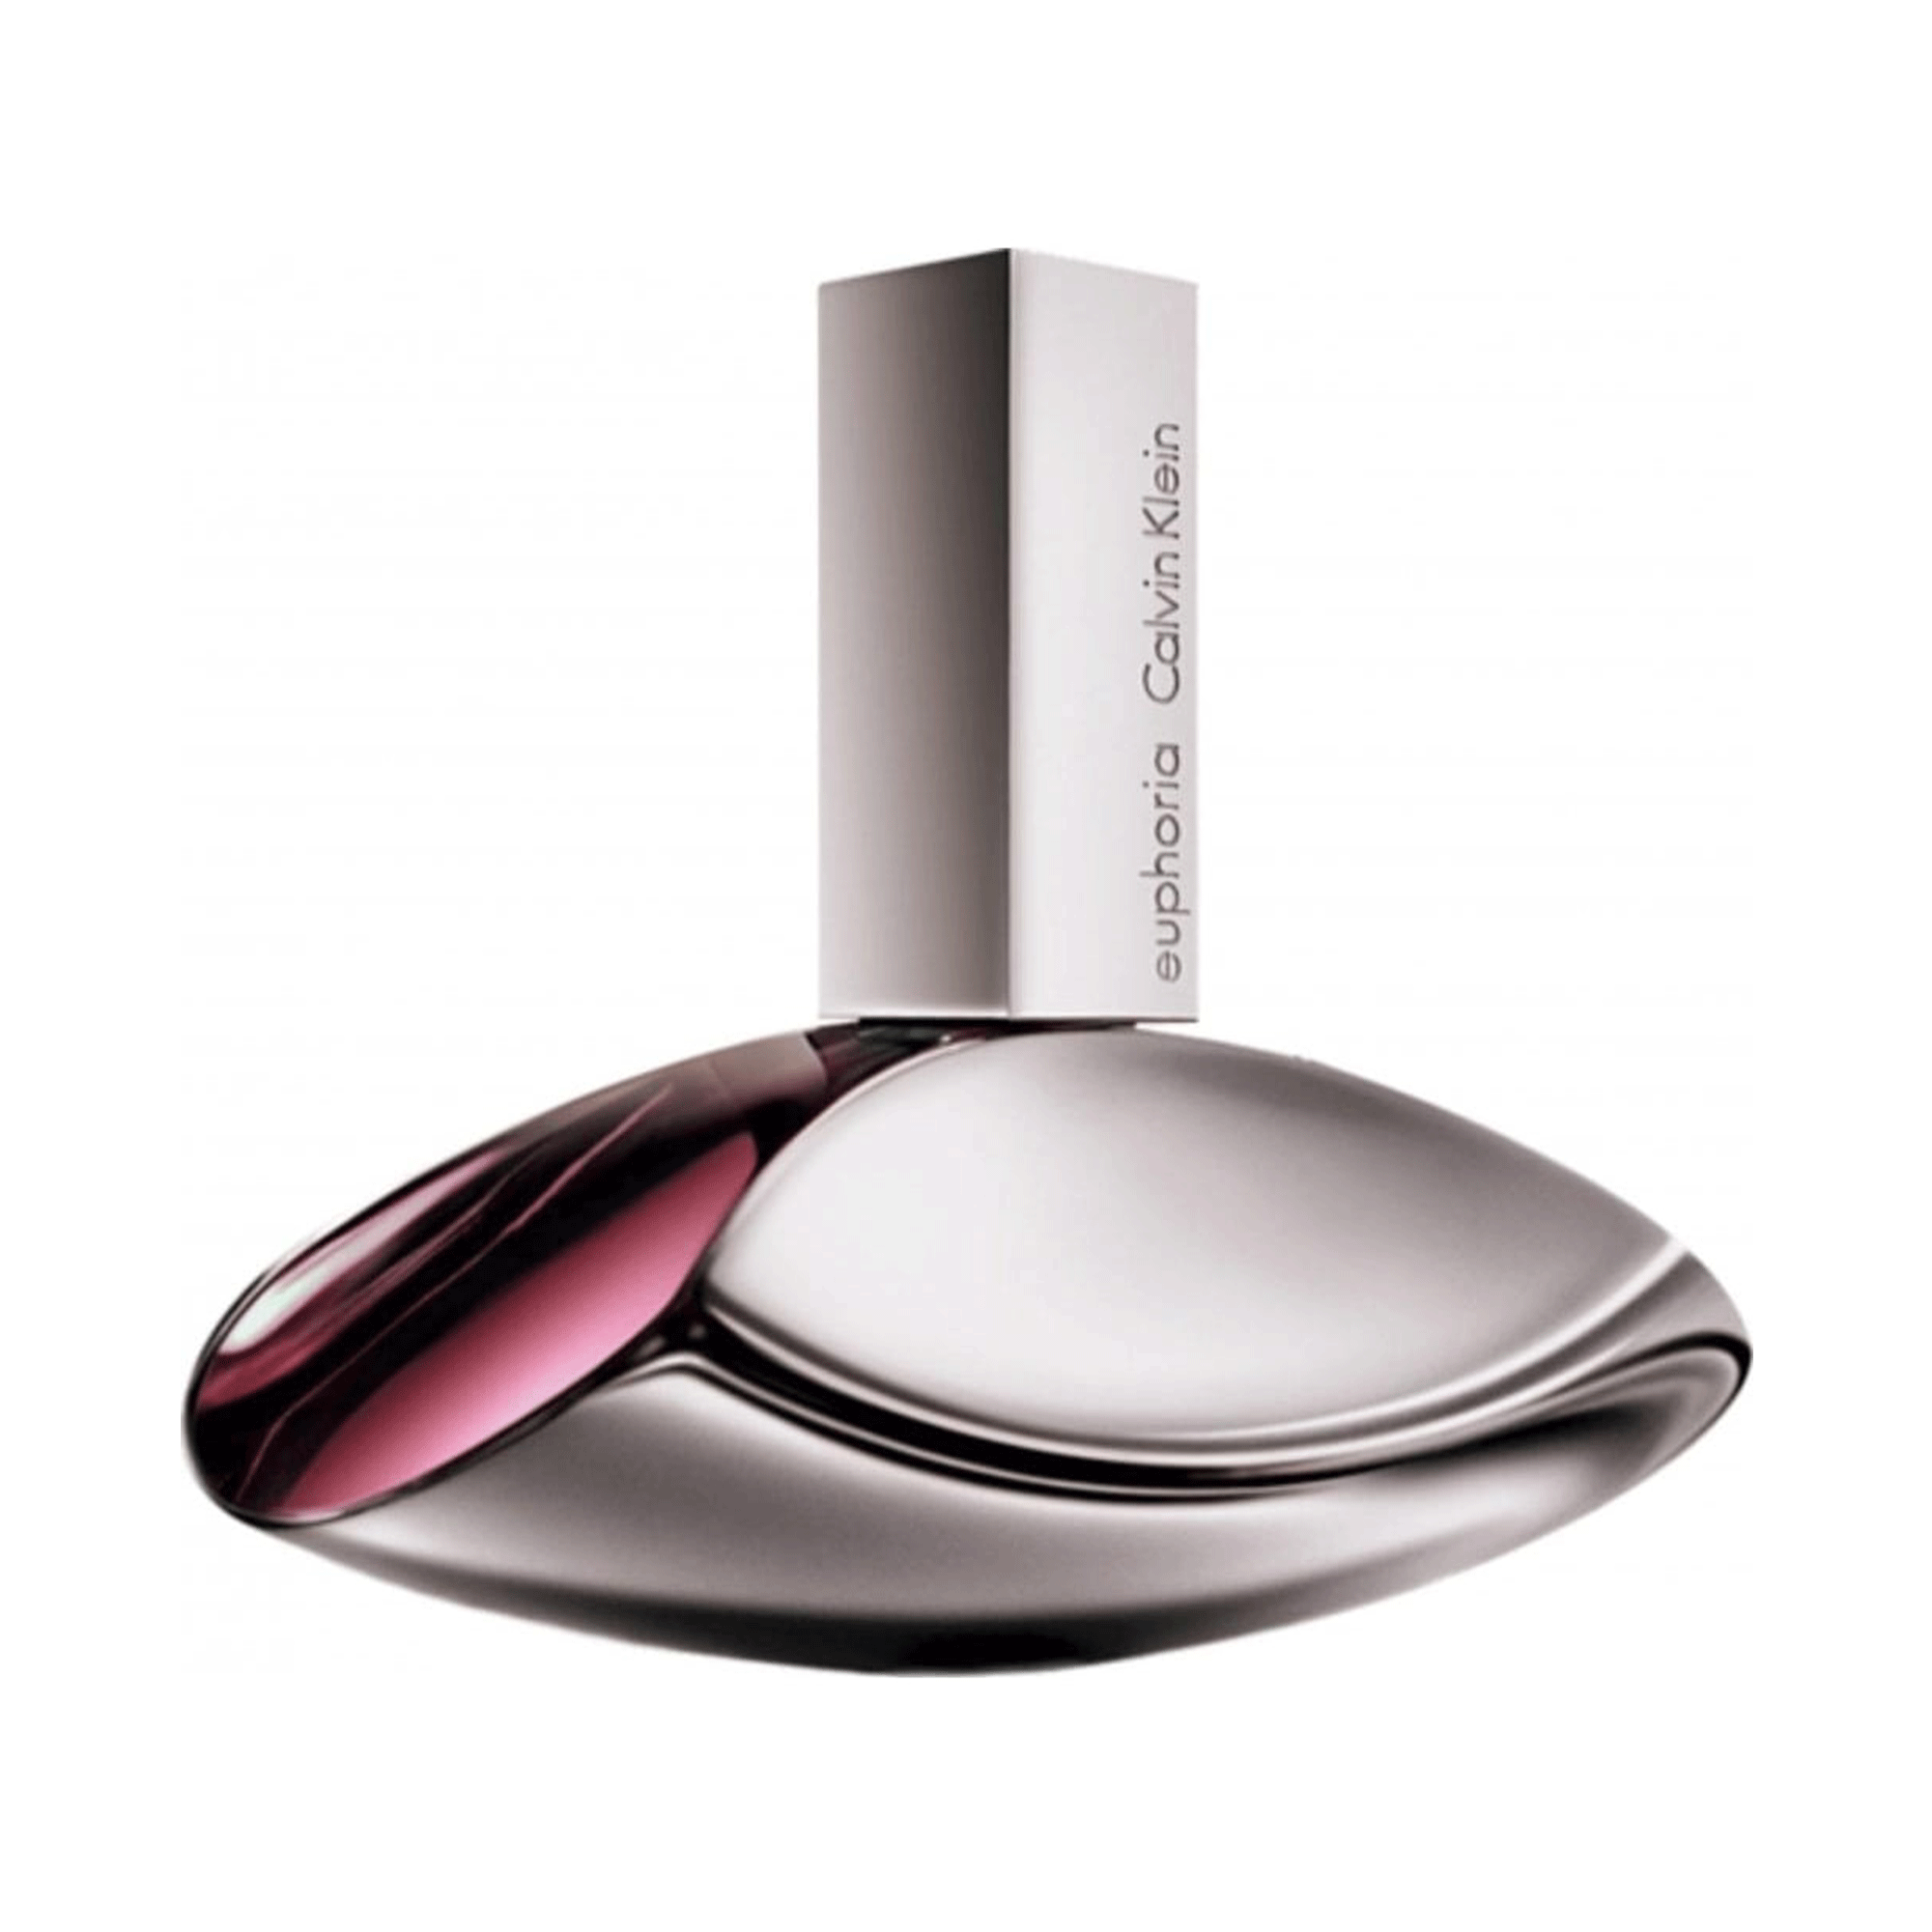 Photos - Women's Fragrance Calvin Klein Euphoria Eau de Parfum 160ml, 100ml, 50ml, & 30ml Spray - Pea 